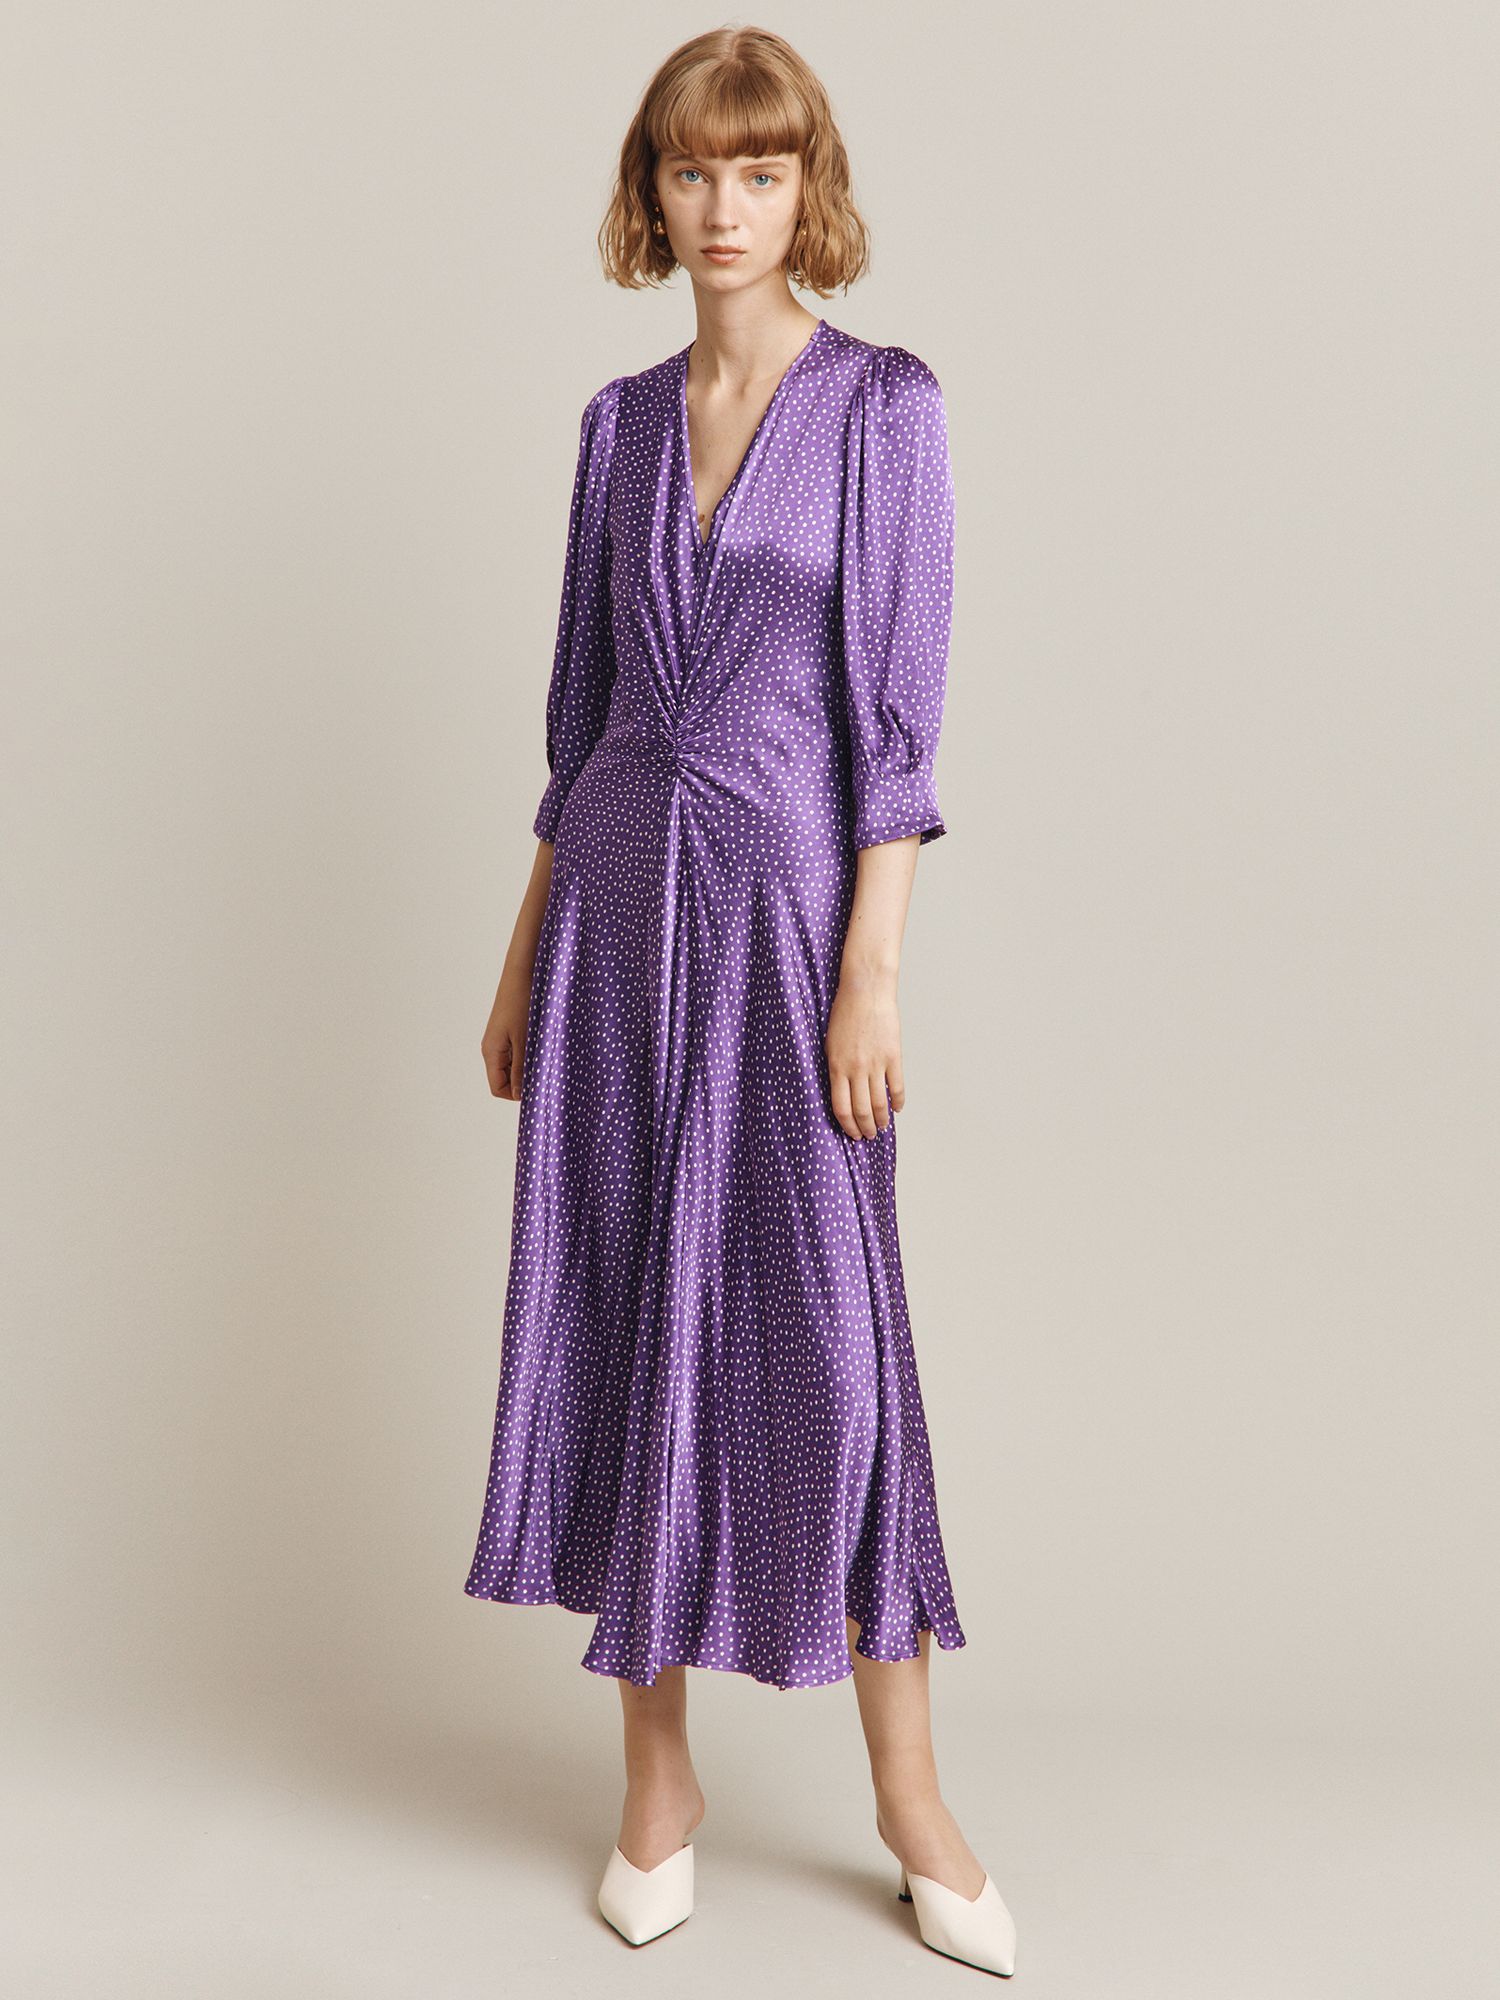 Ghost Louisa Spot Print Satin Midi Dress, Purple, L